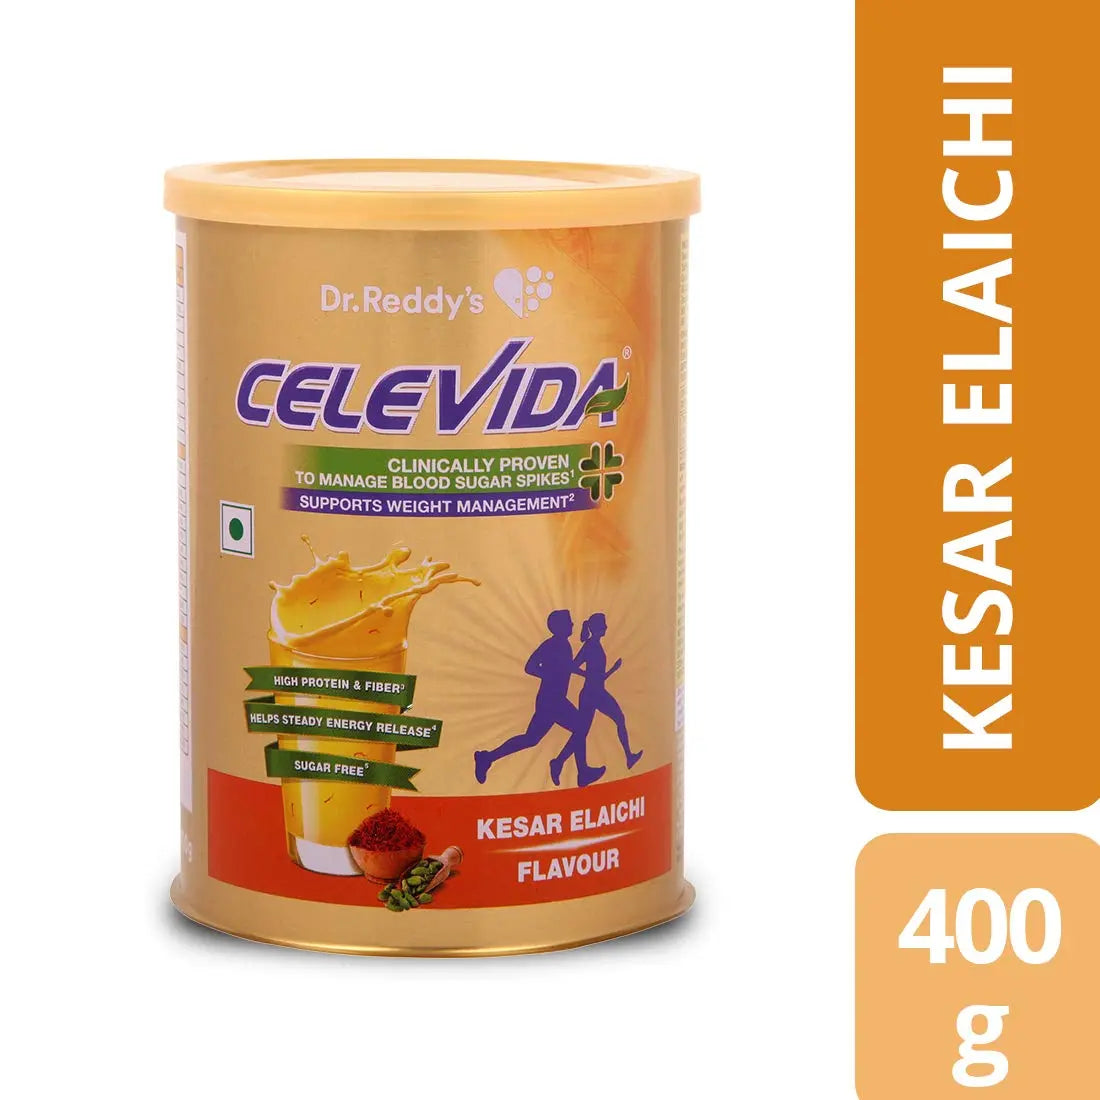 Dr. Reddy's Celevida  - Nutrition Health Drink for Diabetes Control & Immunity Support | Kesar Elaichi Flavour| No Added Sugar | 400g Powder Dr.Reddy's